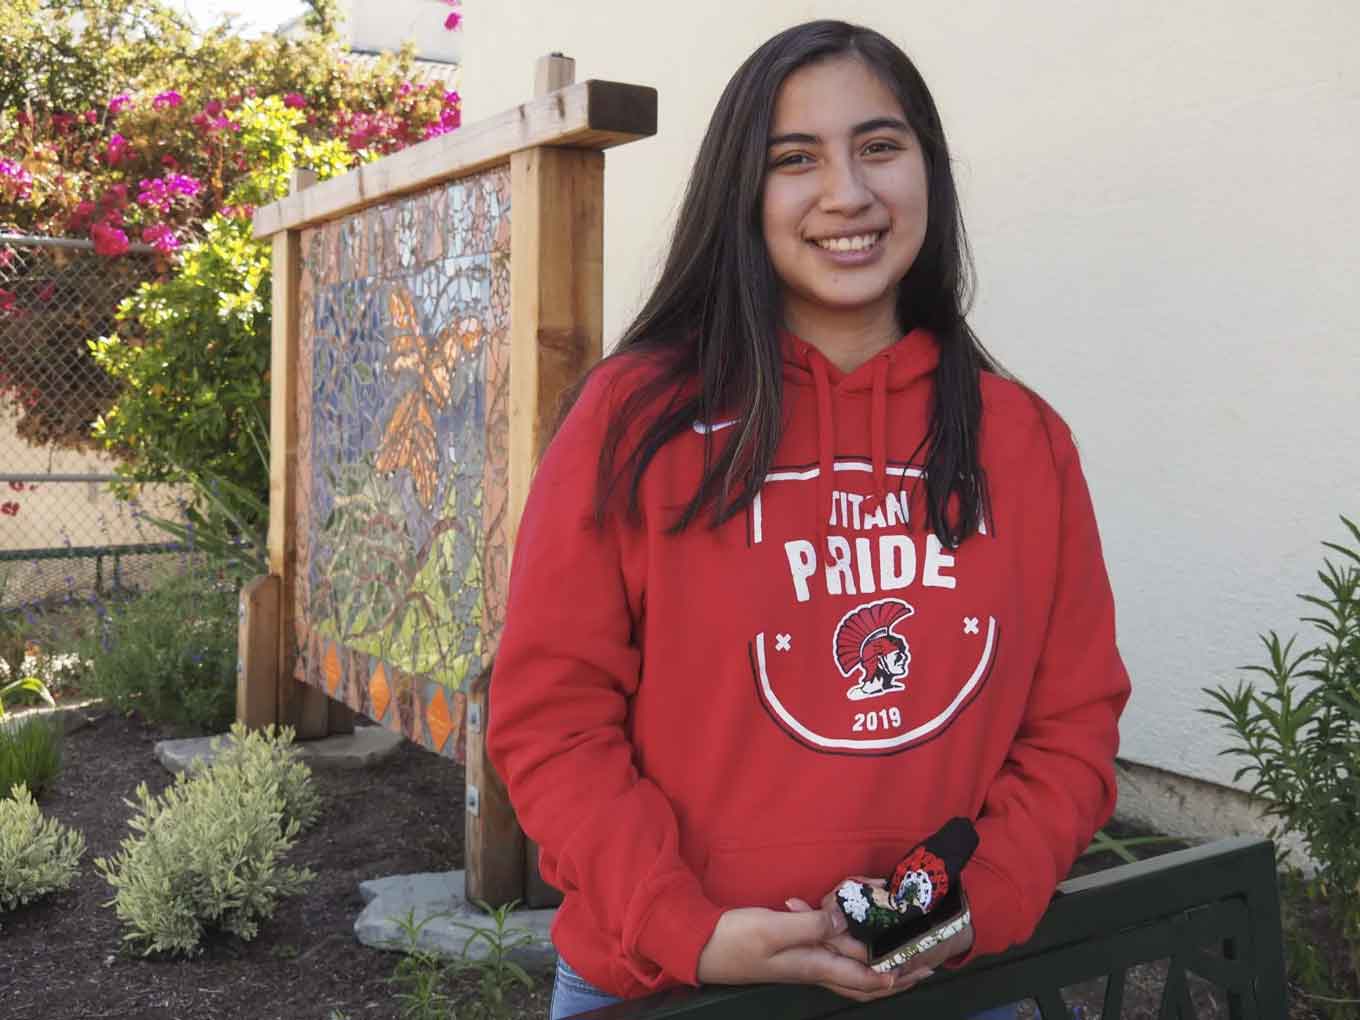 Een eerstejaars bij UC Berkley draagt een rode "Tital Pride" sweatshirt en glimlach voor de camera